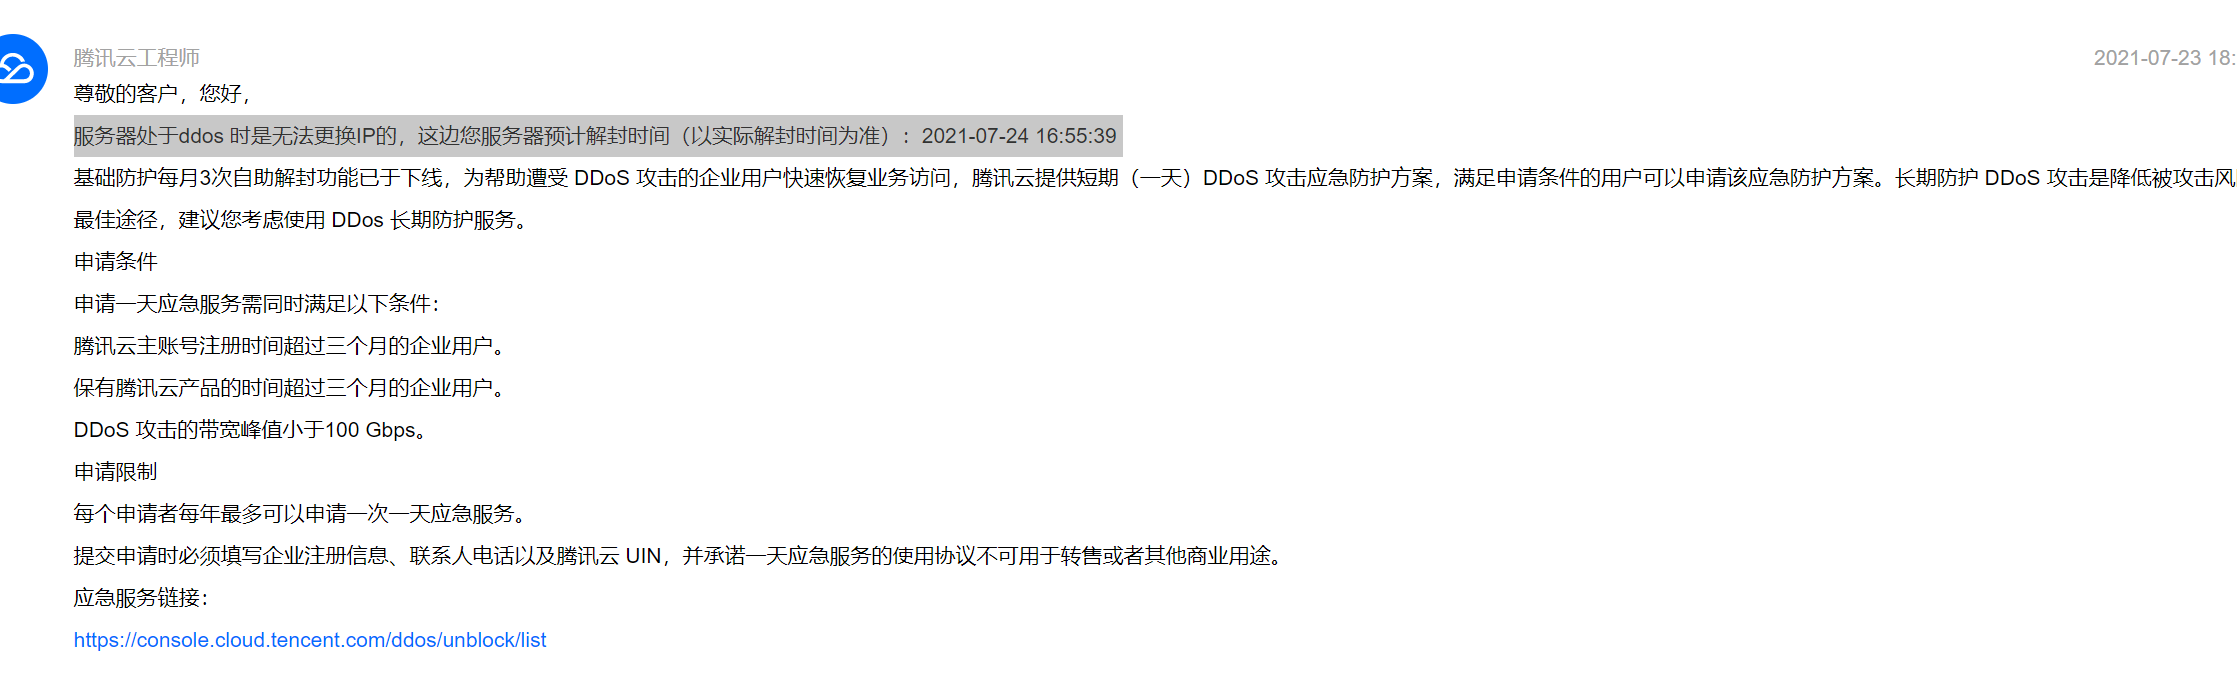 腾讯云取消了 每月3次的DDOS自助解封功能